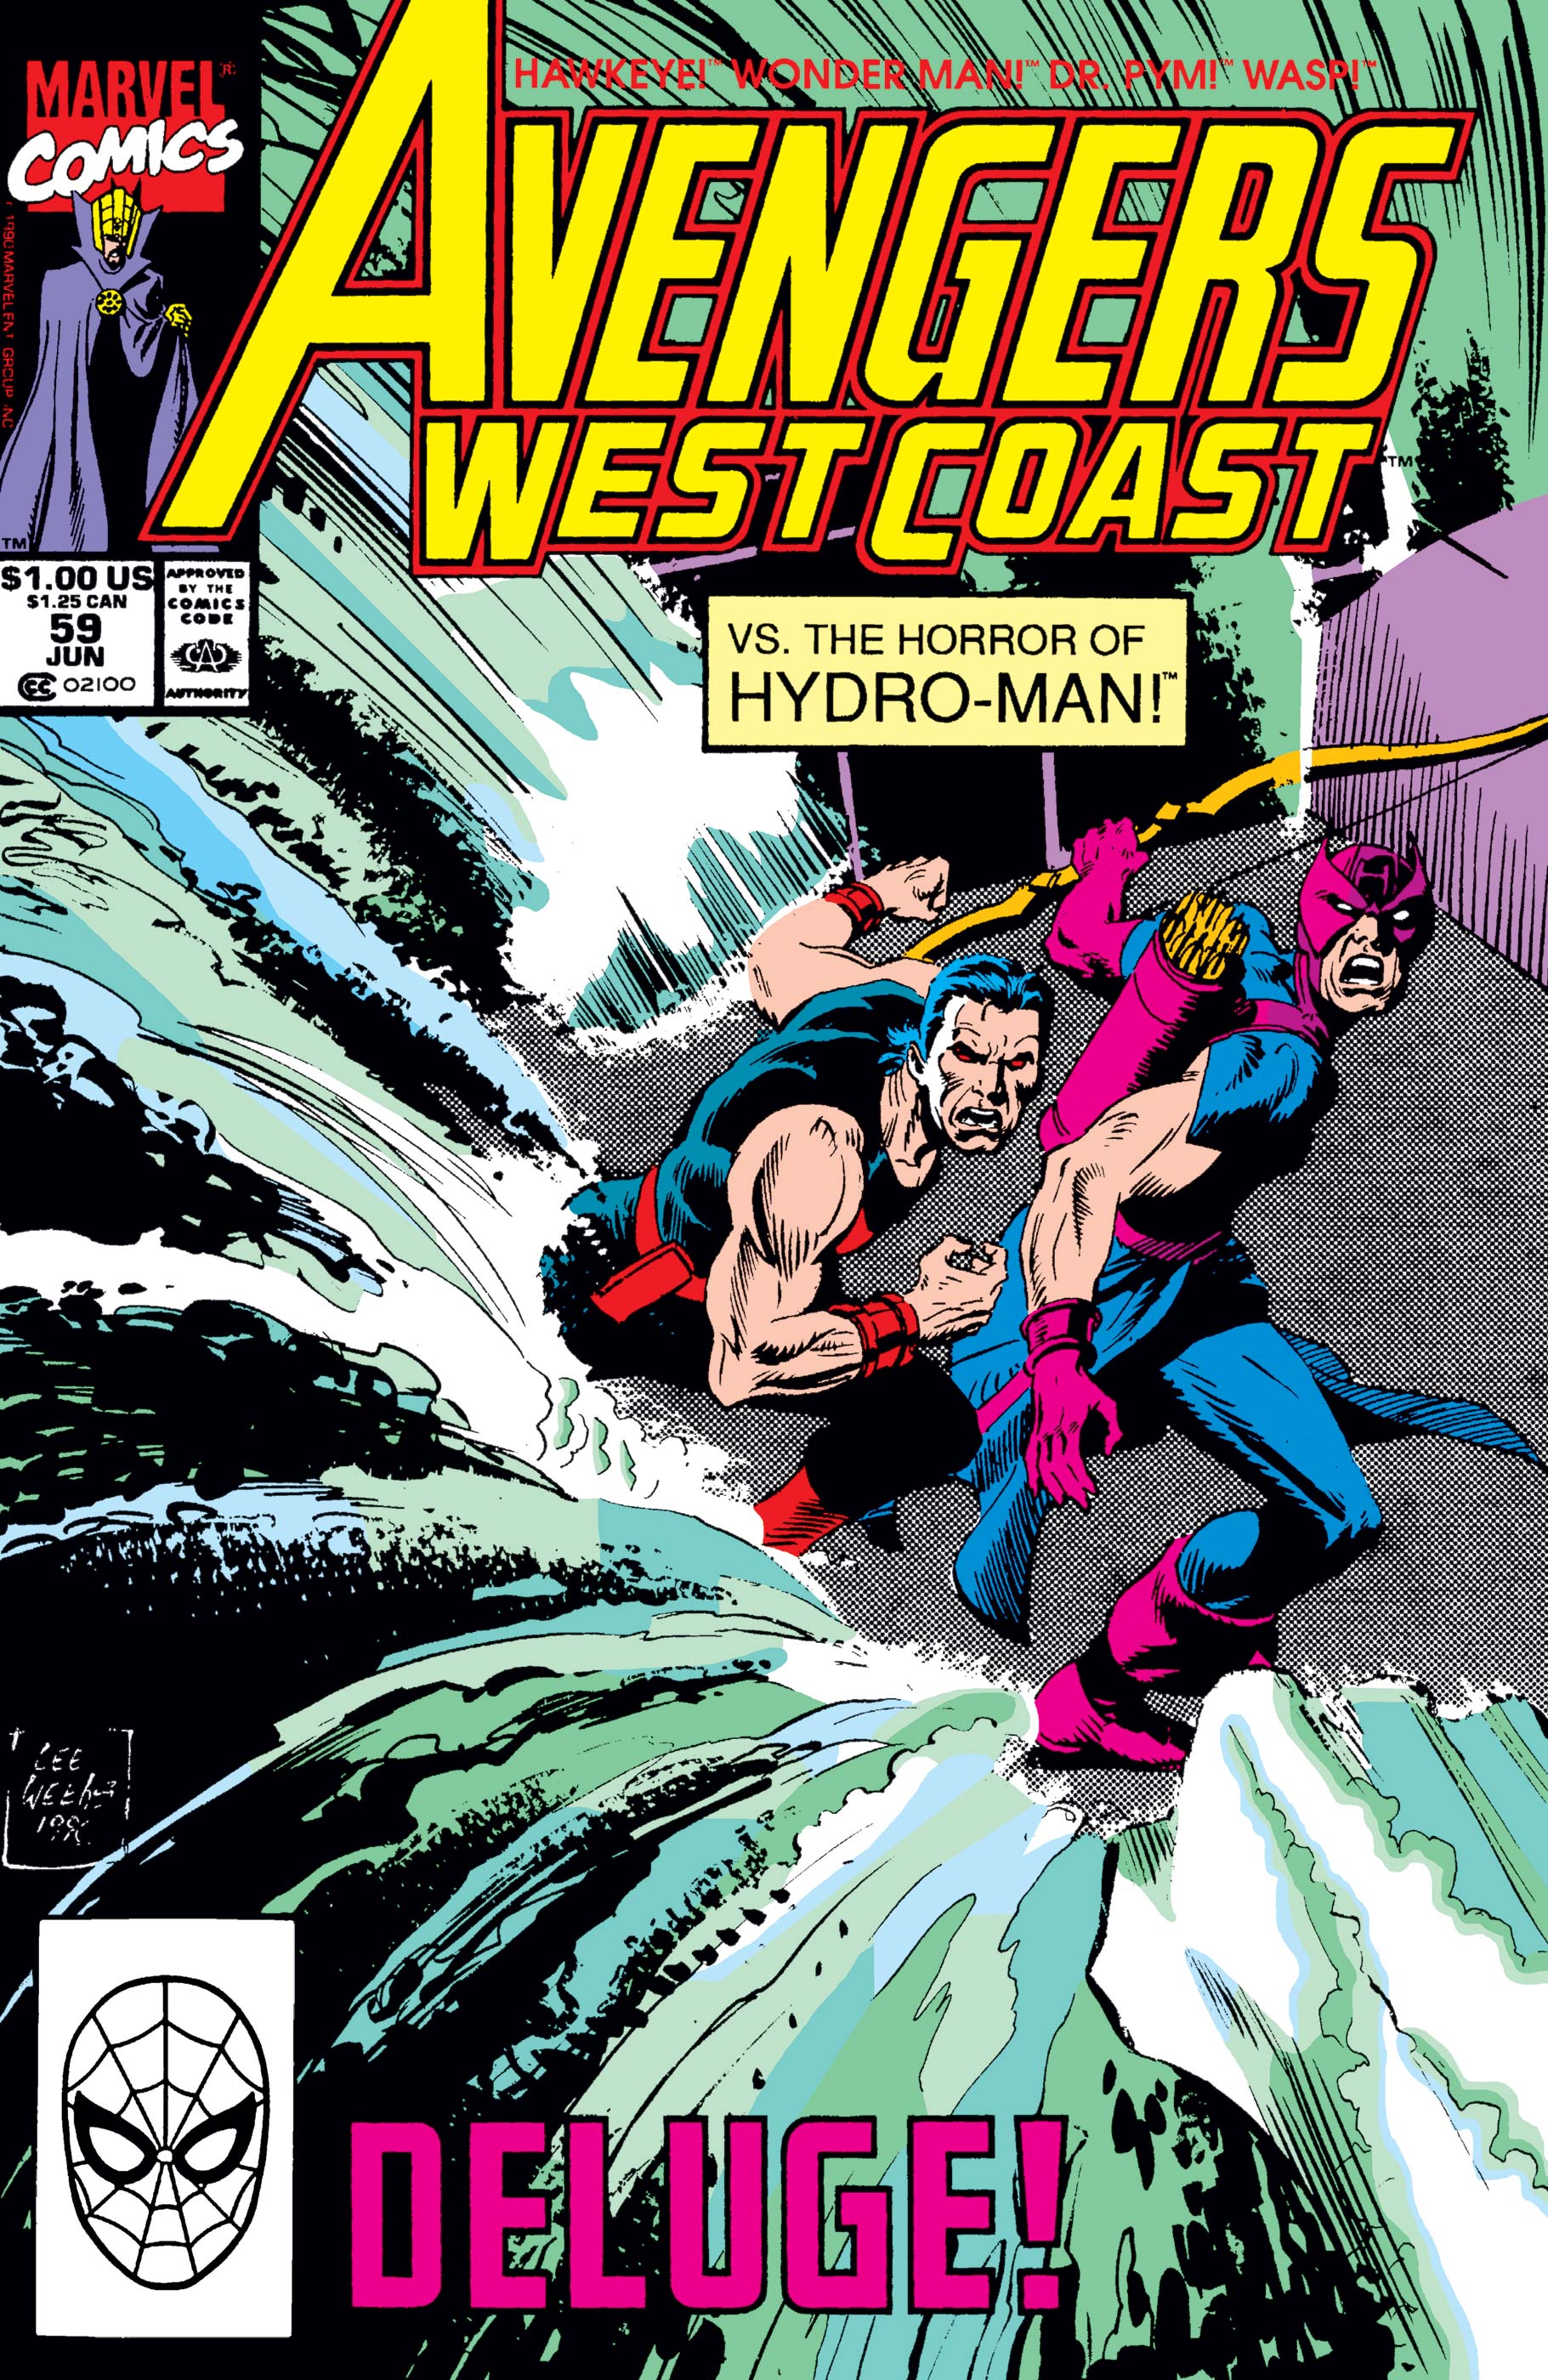 West Coast Avengers (1985) #59